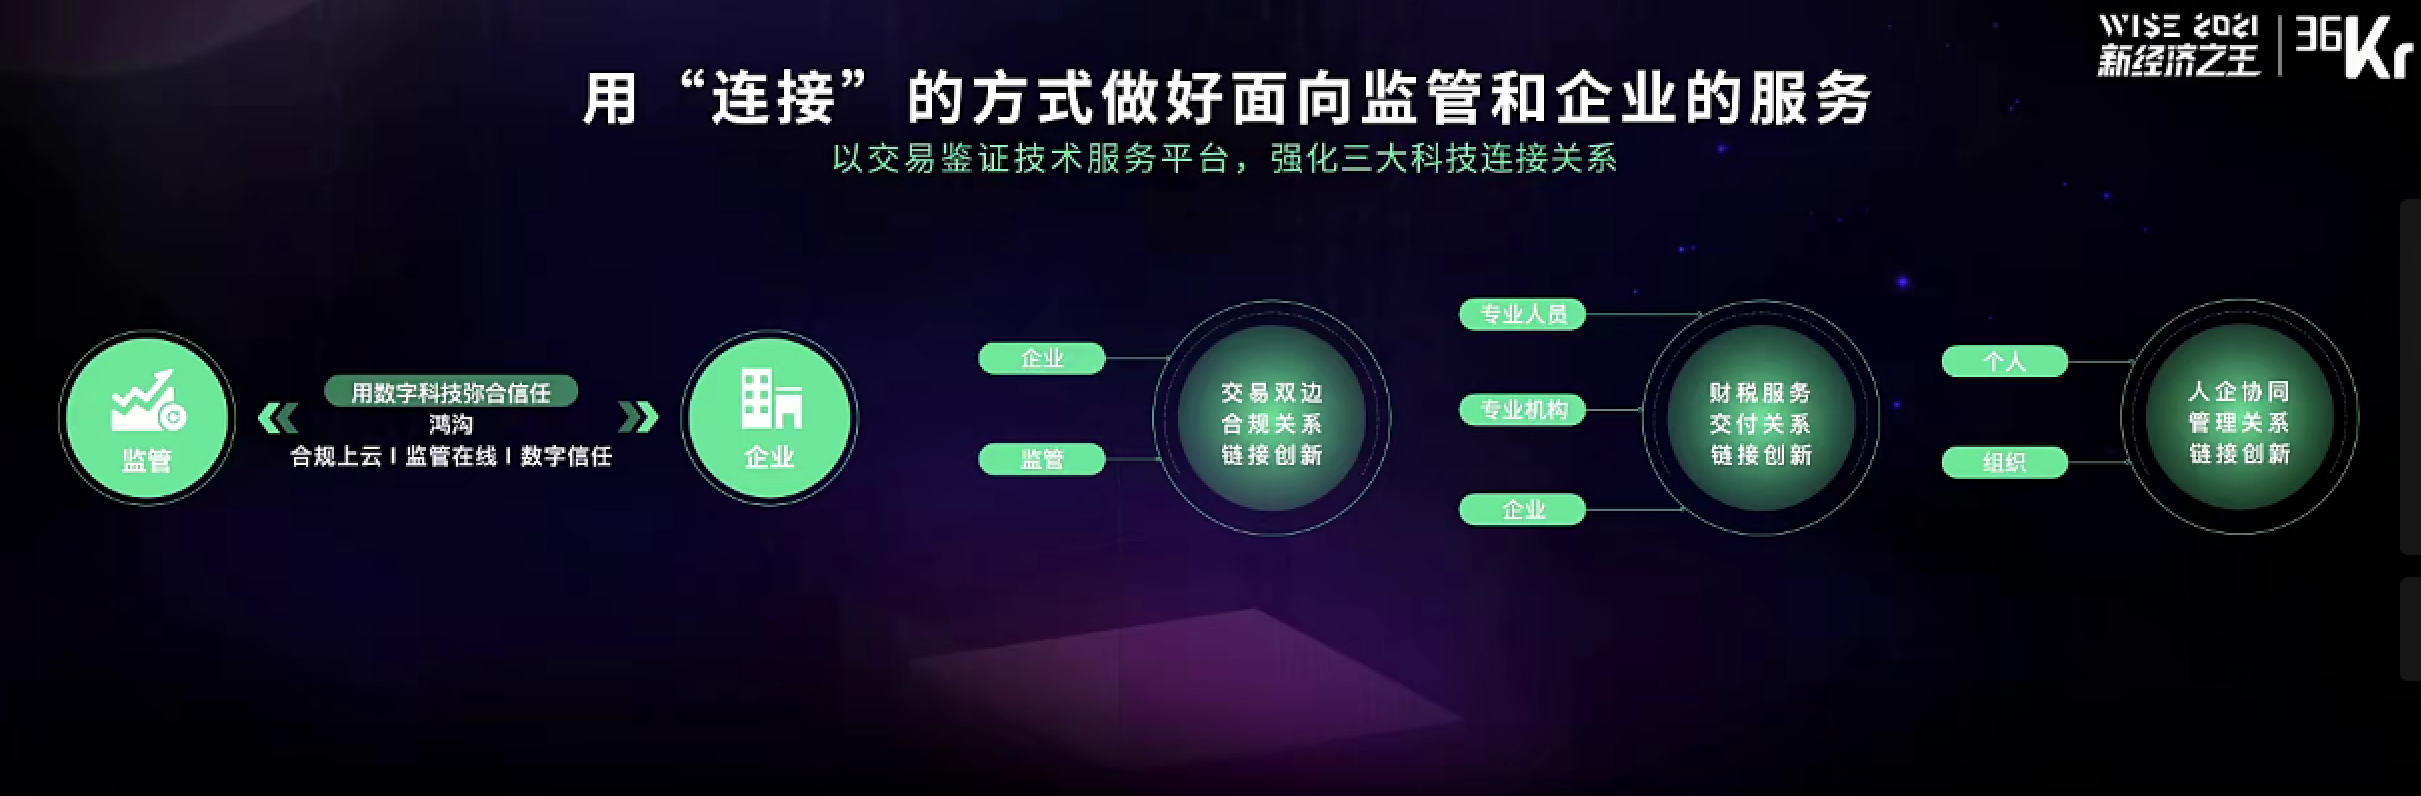 高灯科技联合创始人、总裁张民遐：电子凭证交换中心为“数字政府”助力 | WISE 2021中国数字化创新高峰论坛